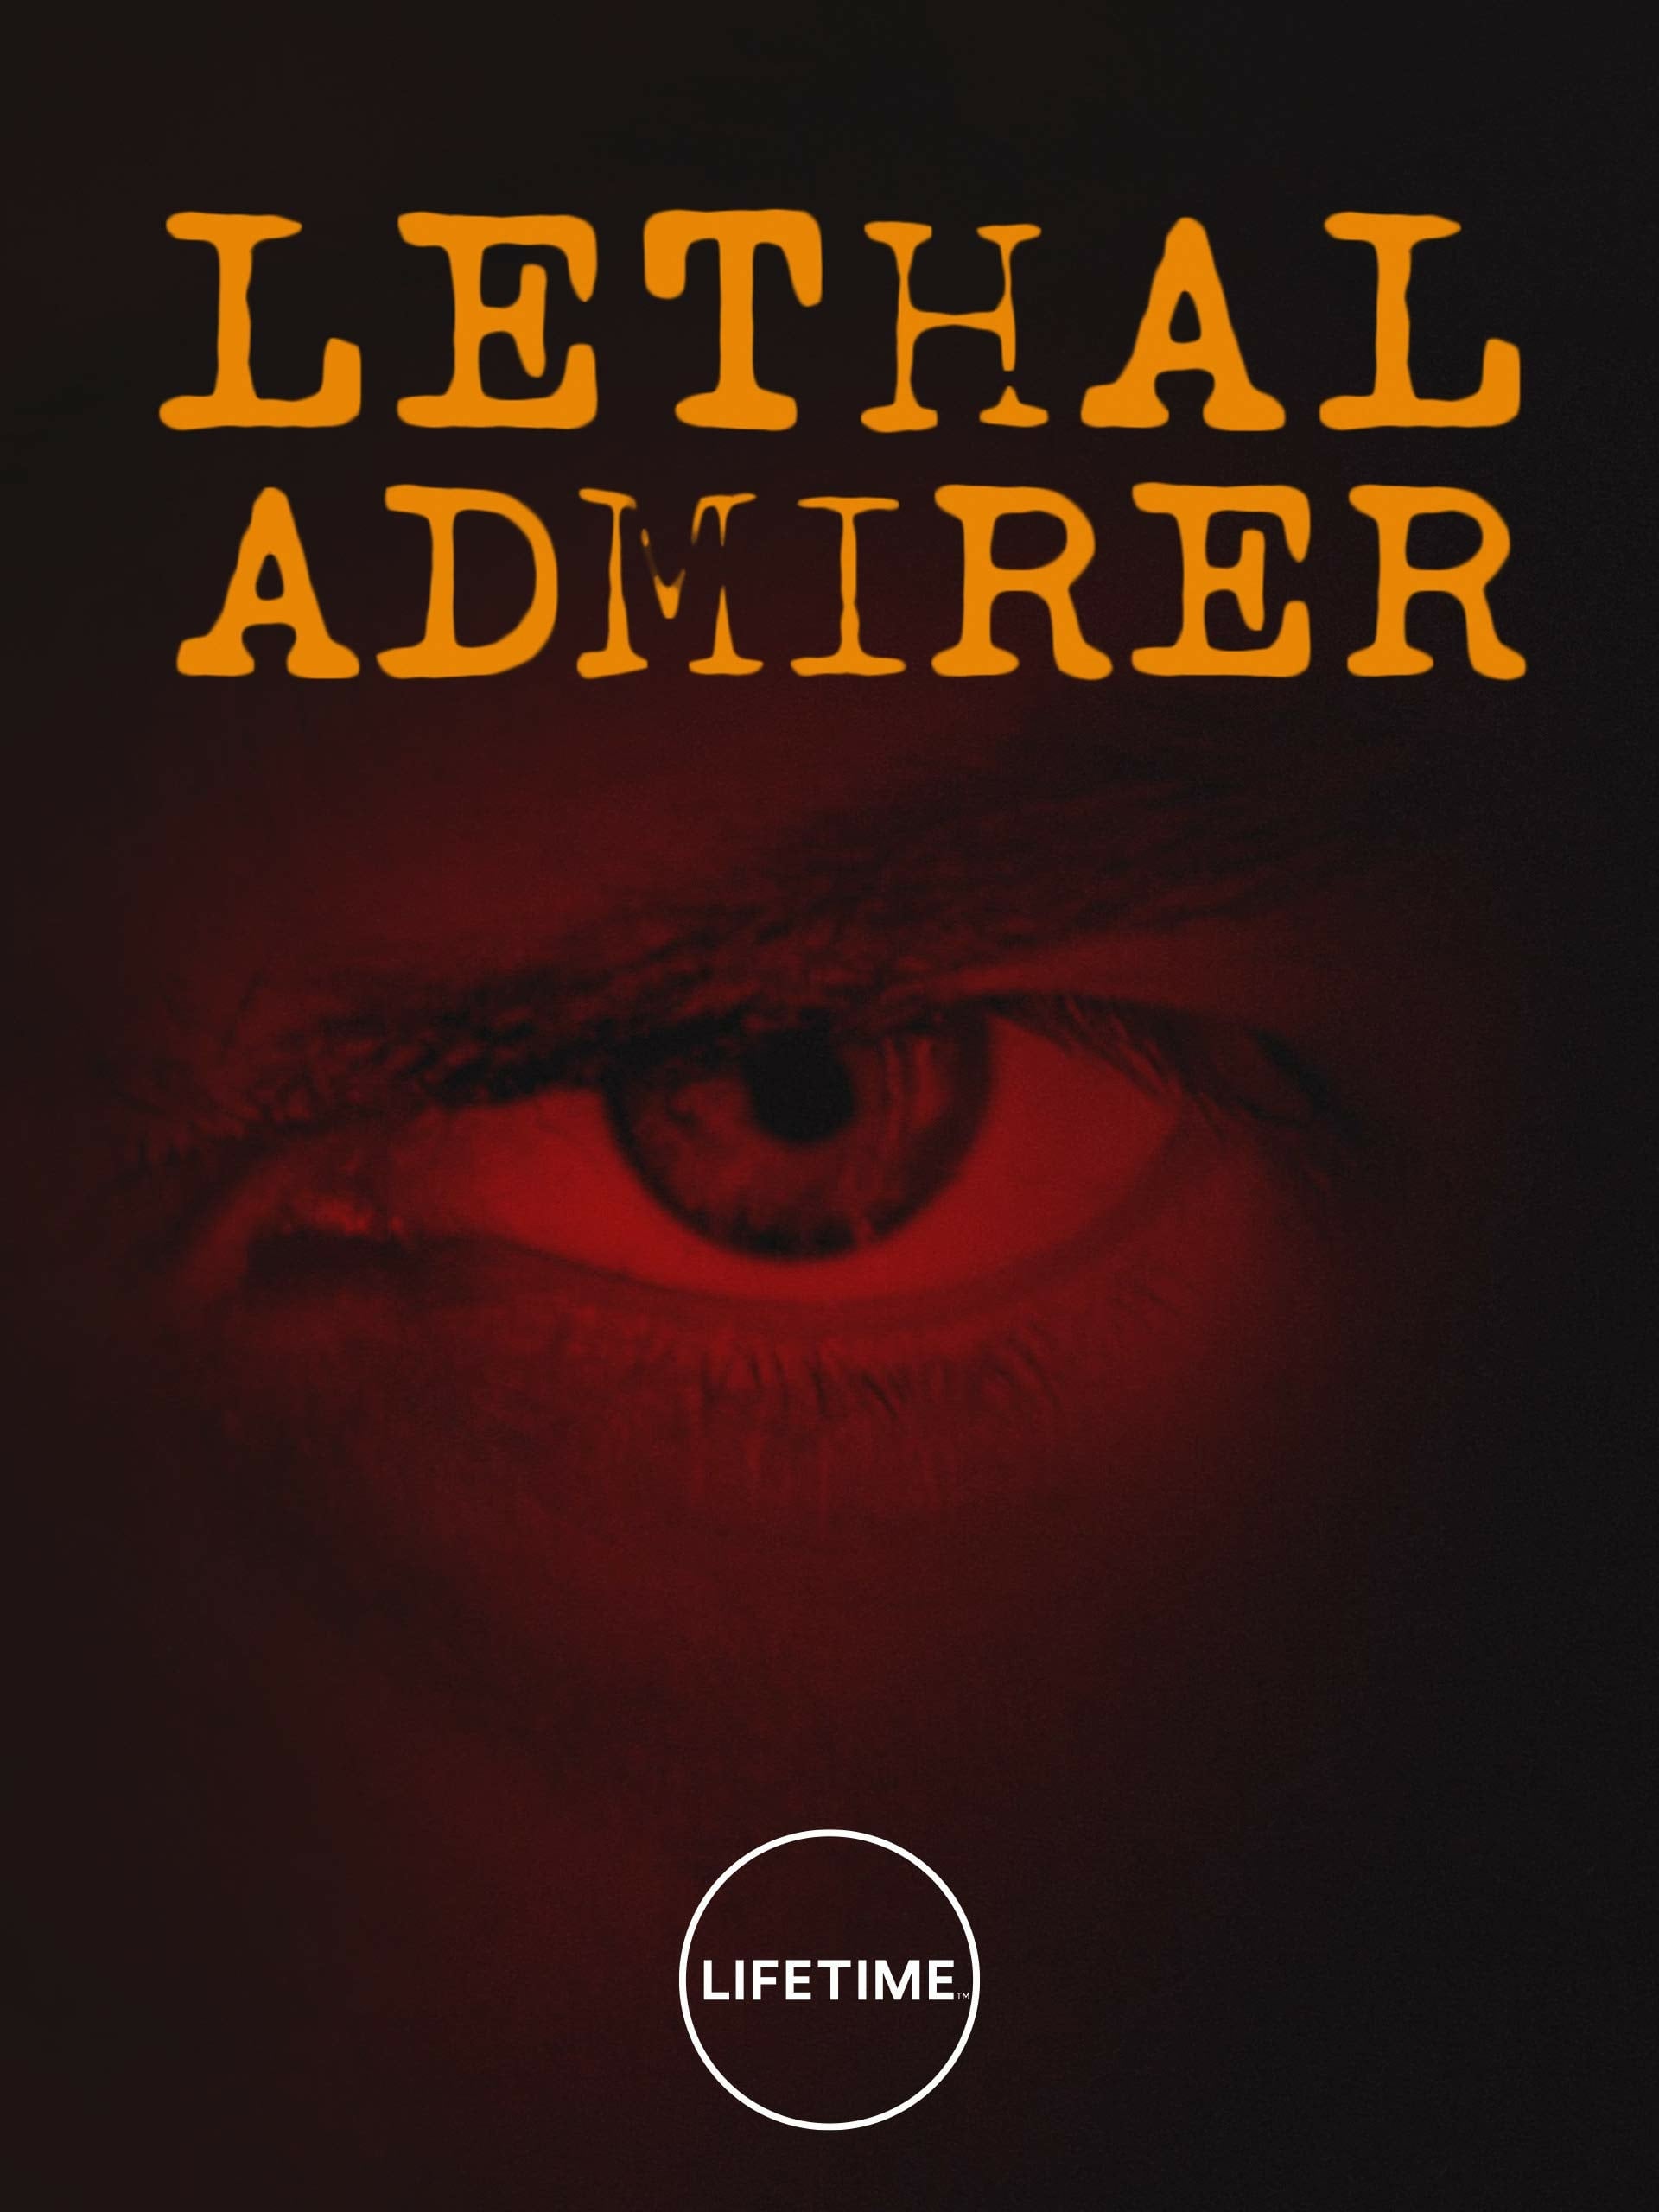 دانلود فیلم Lethal Admirer 2018